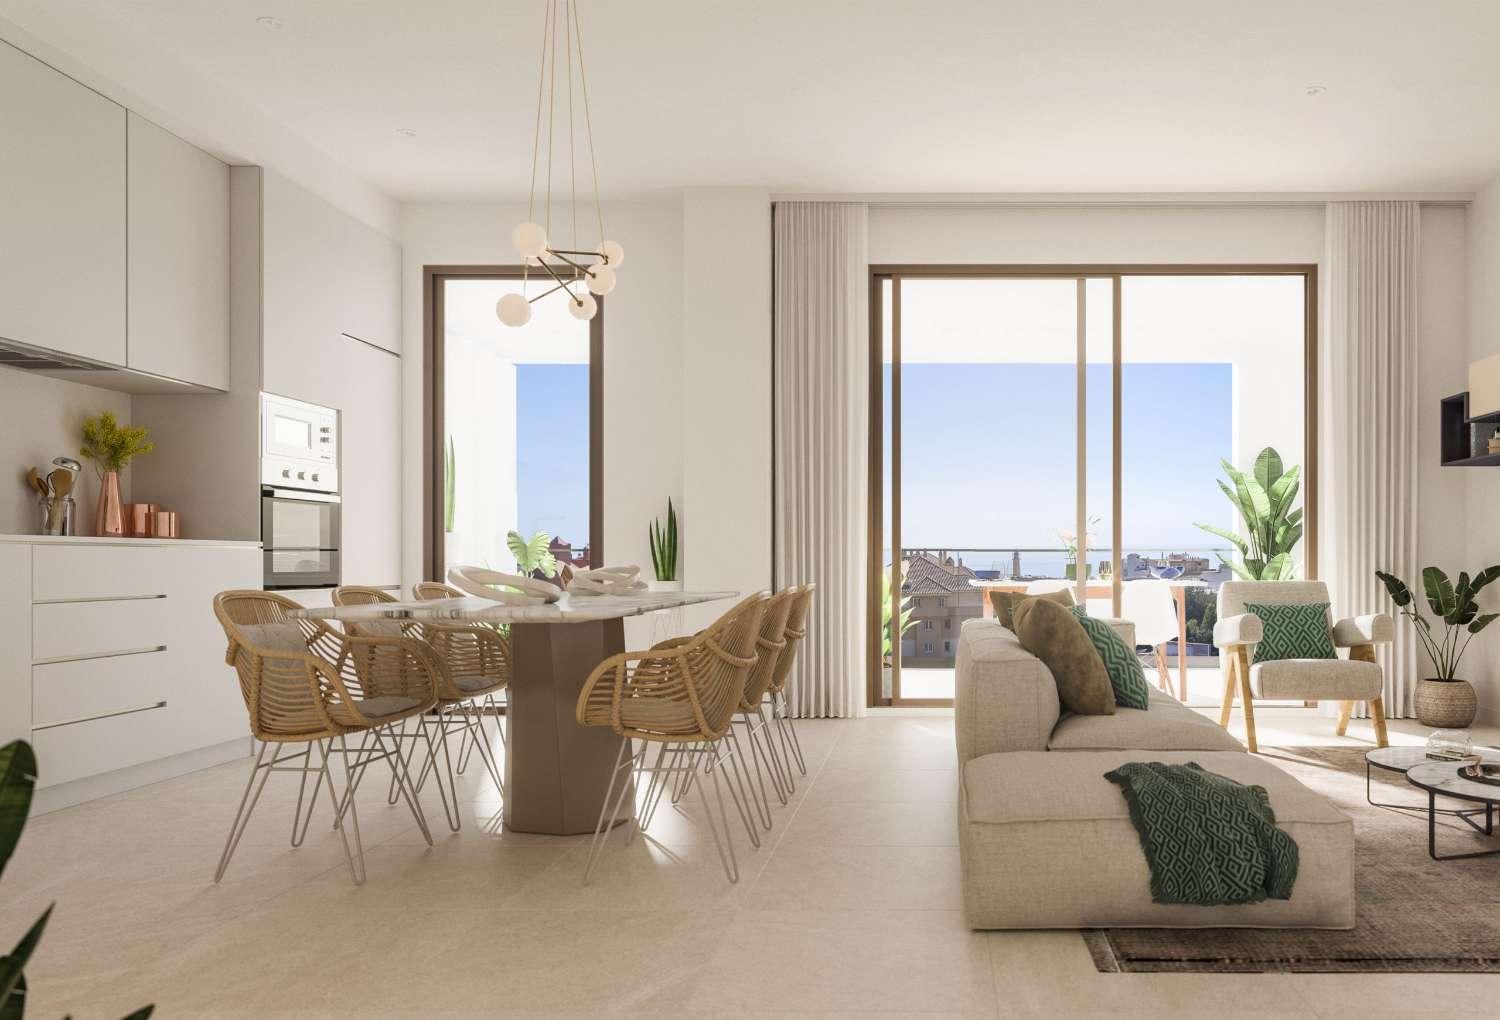 2 o 3 dormitorios, 2 baños y terraza con vistas al mar – desde 218.000 €